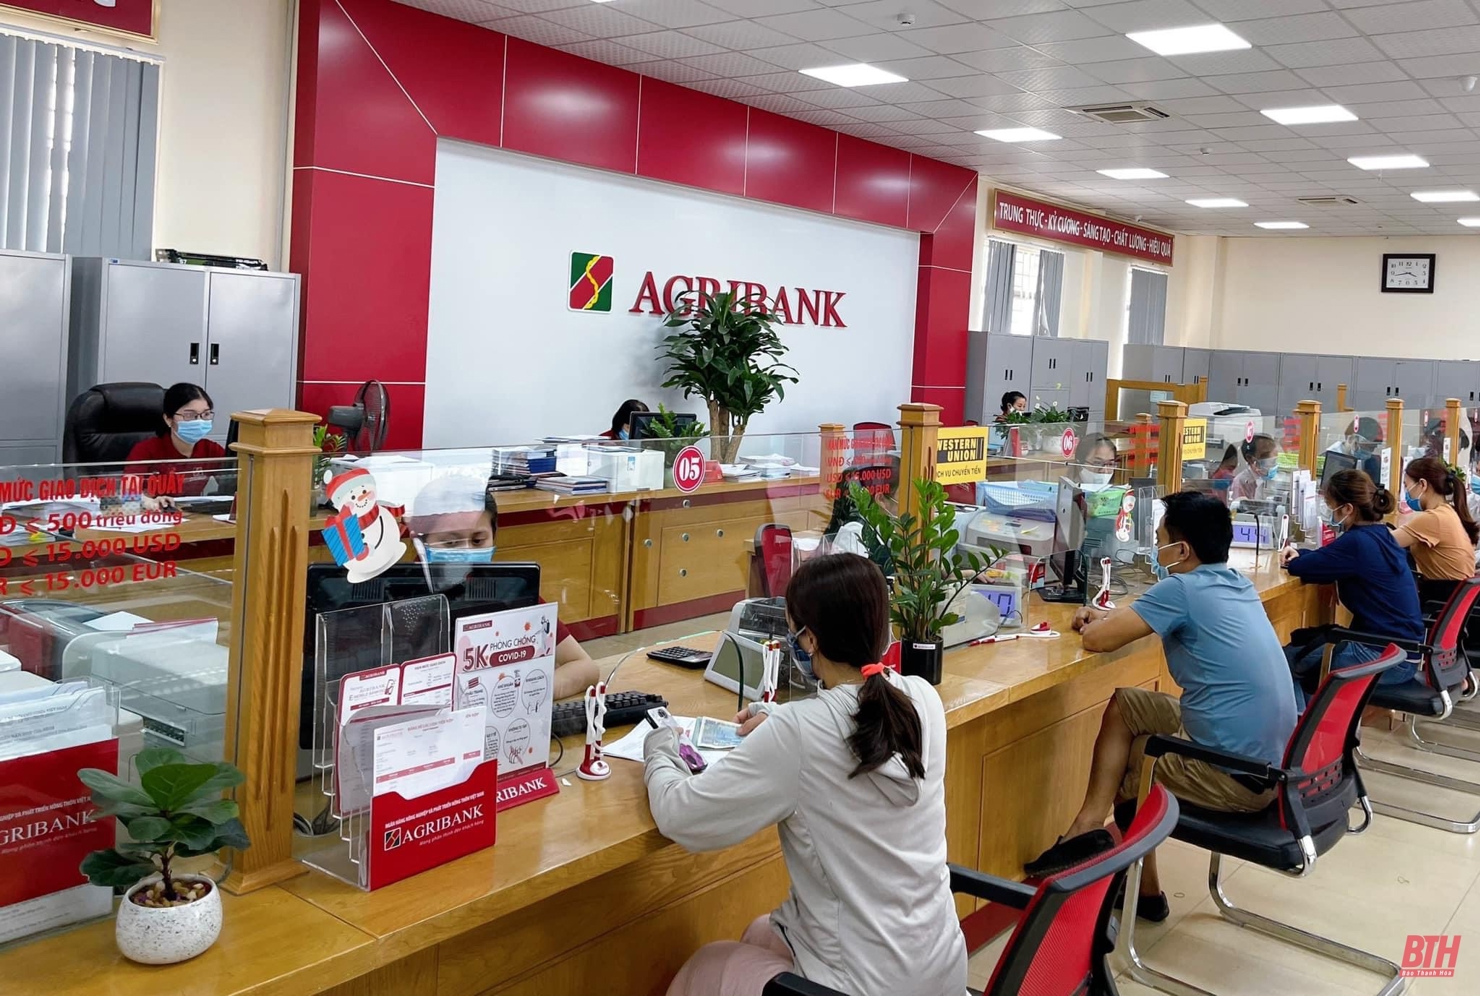 Luôn đổi mới để phục vụ khách hàng tốt hơn là mục tiêu Agribank hướng tới mỗi ngày.